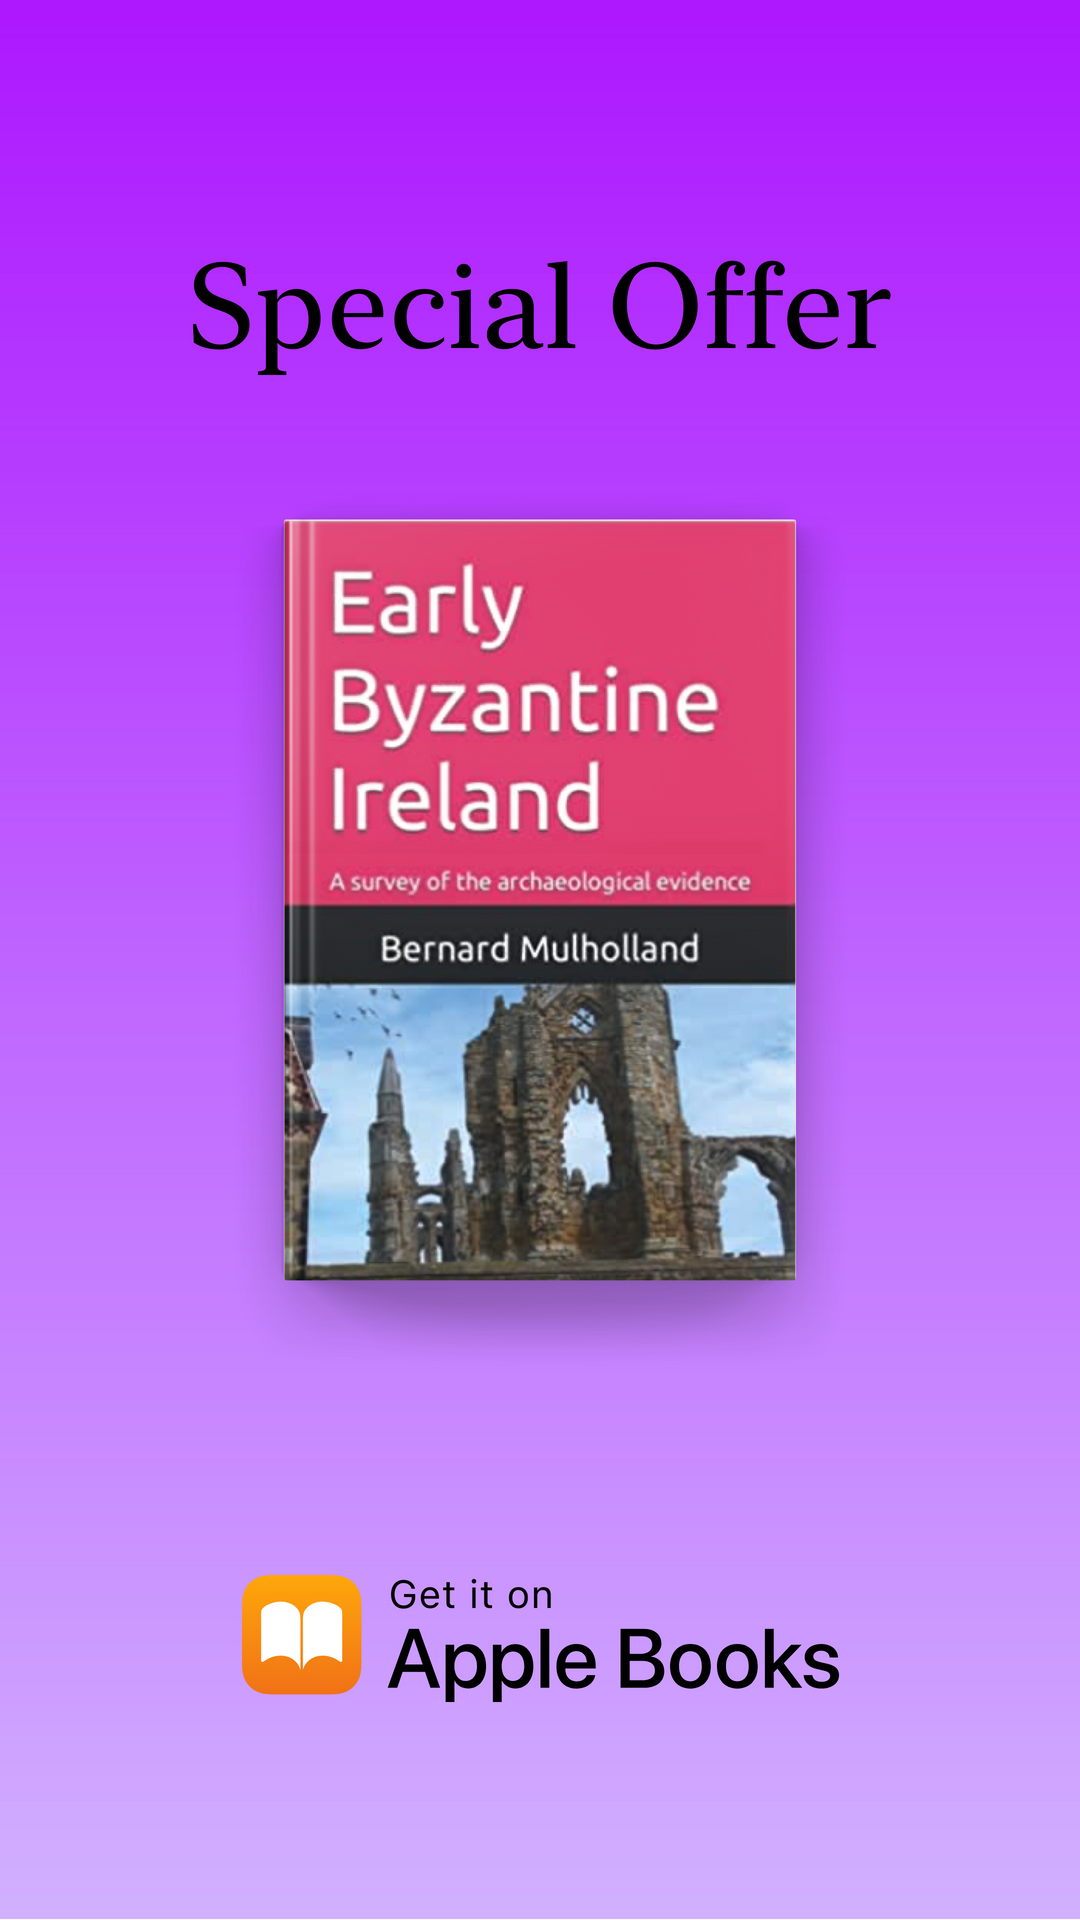 Irlanda bizantina temprana: un estudio de la evidencia arqueológica